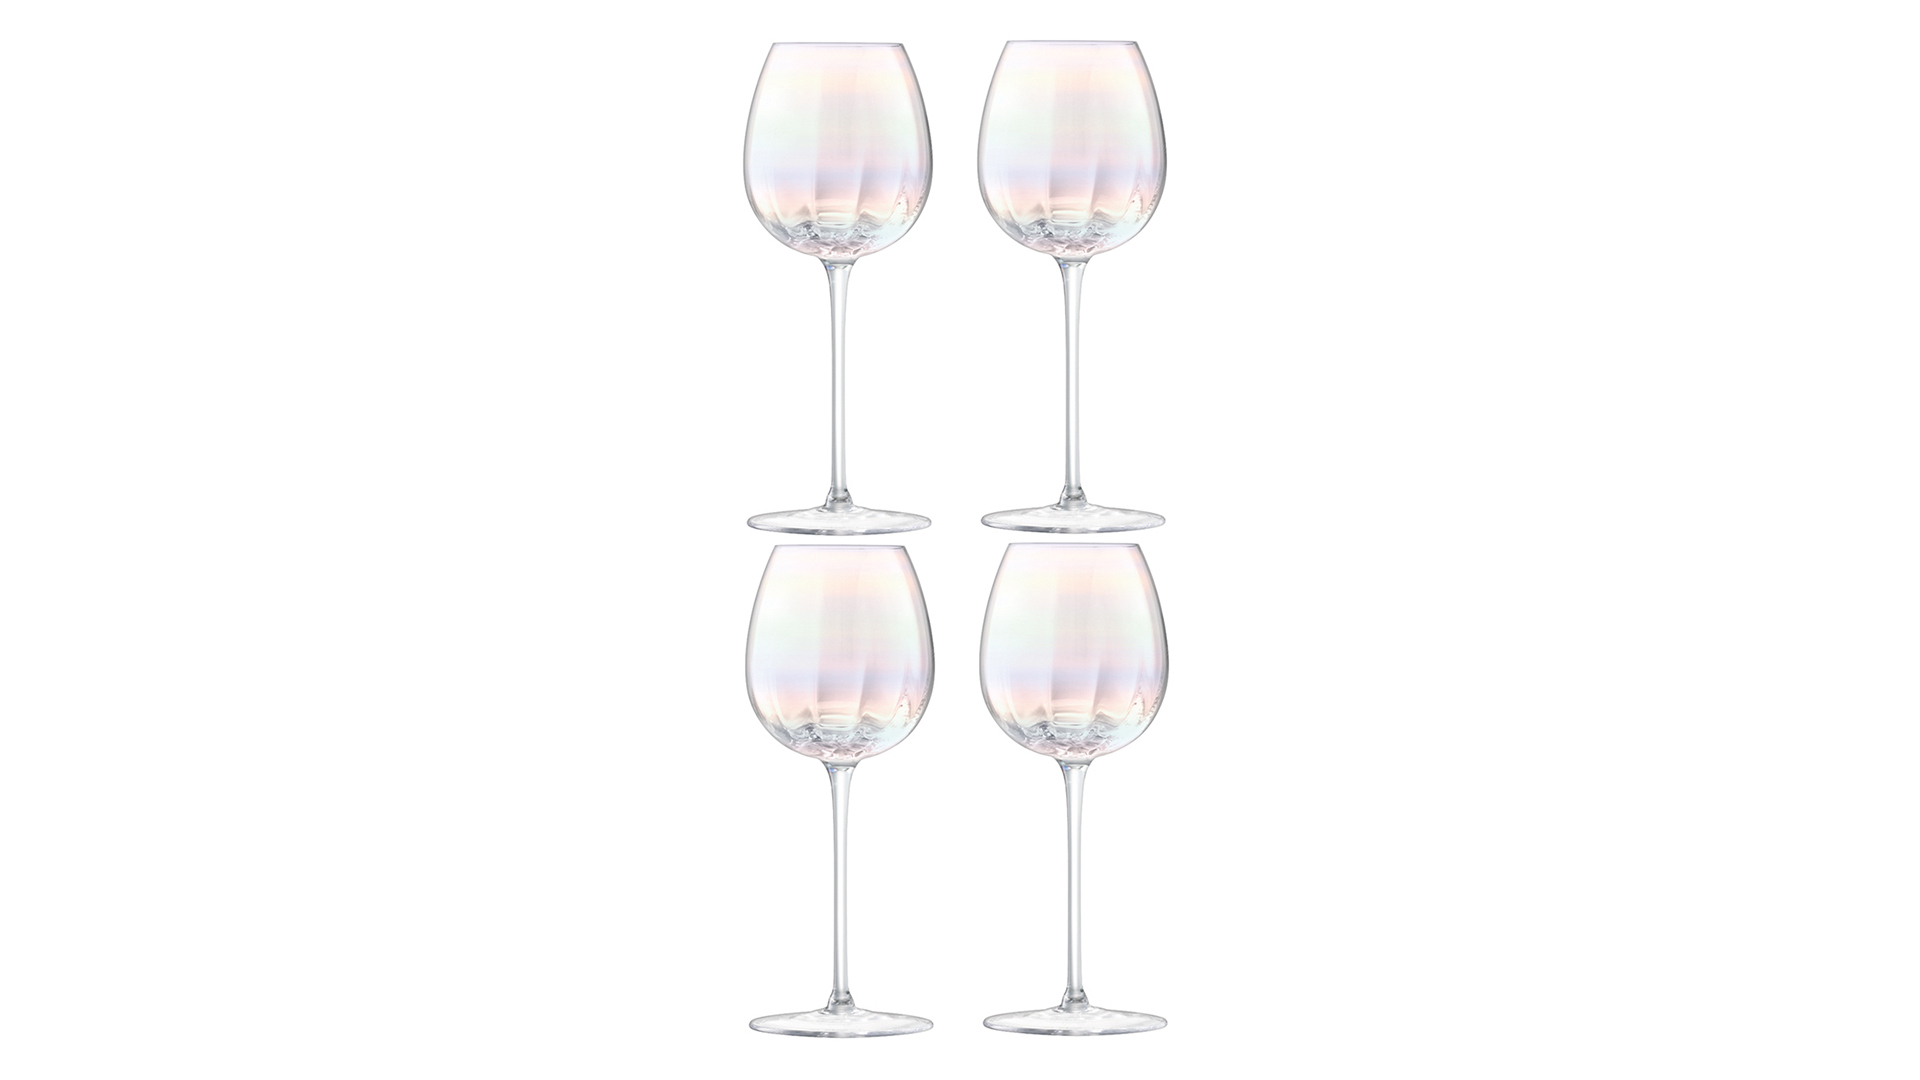 Набор бокалов для белого вина LSA International Pearl 325 мл, 4 шт, стекло, п/у